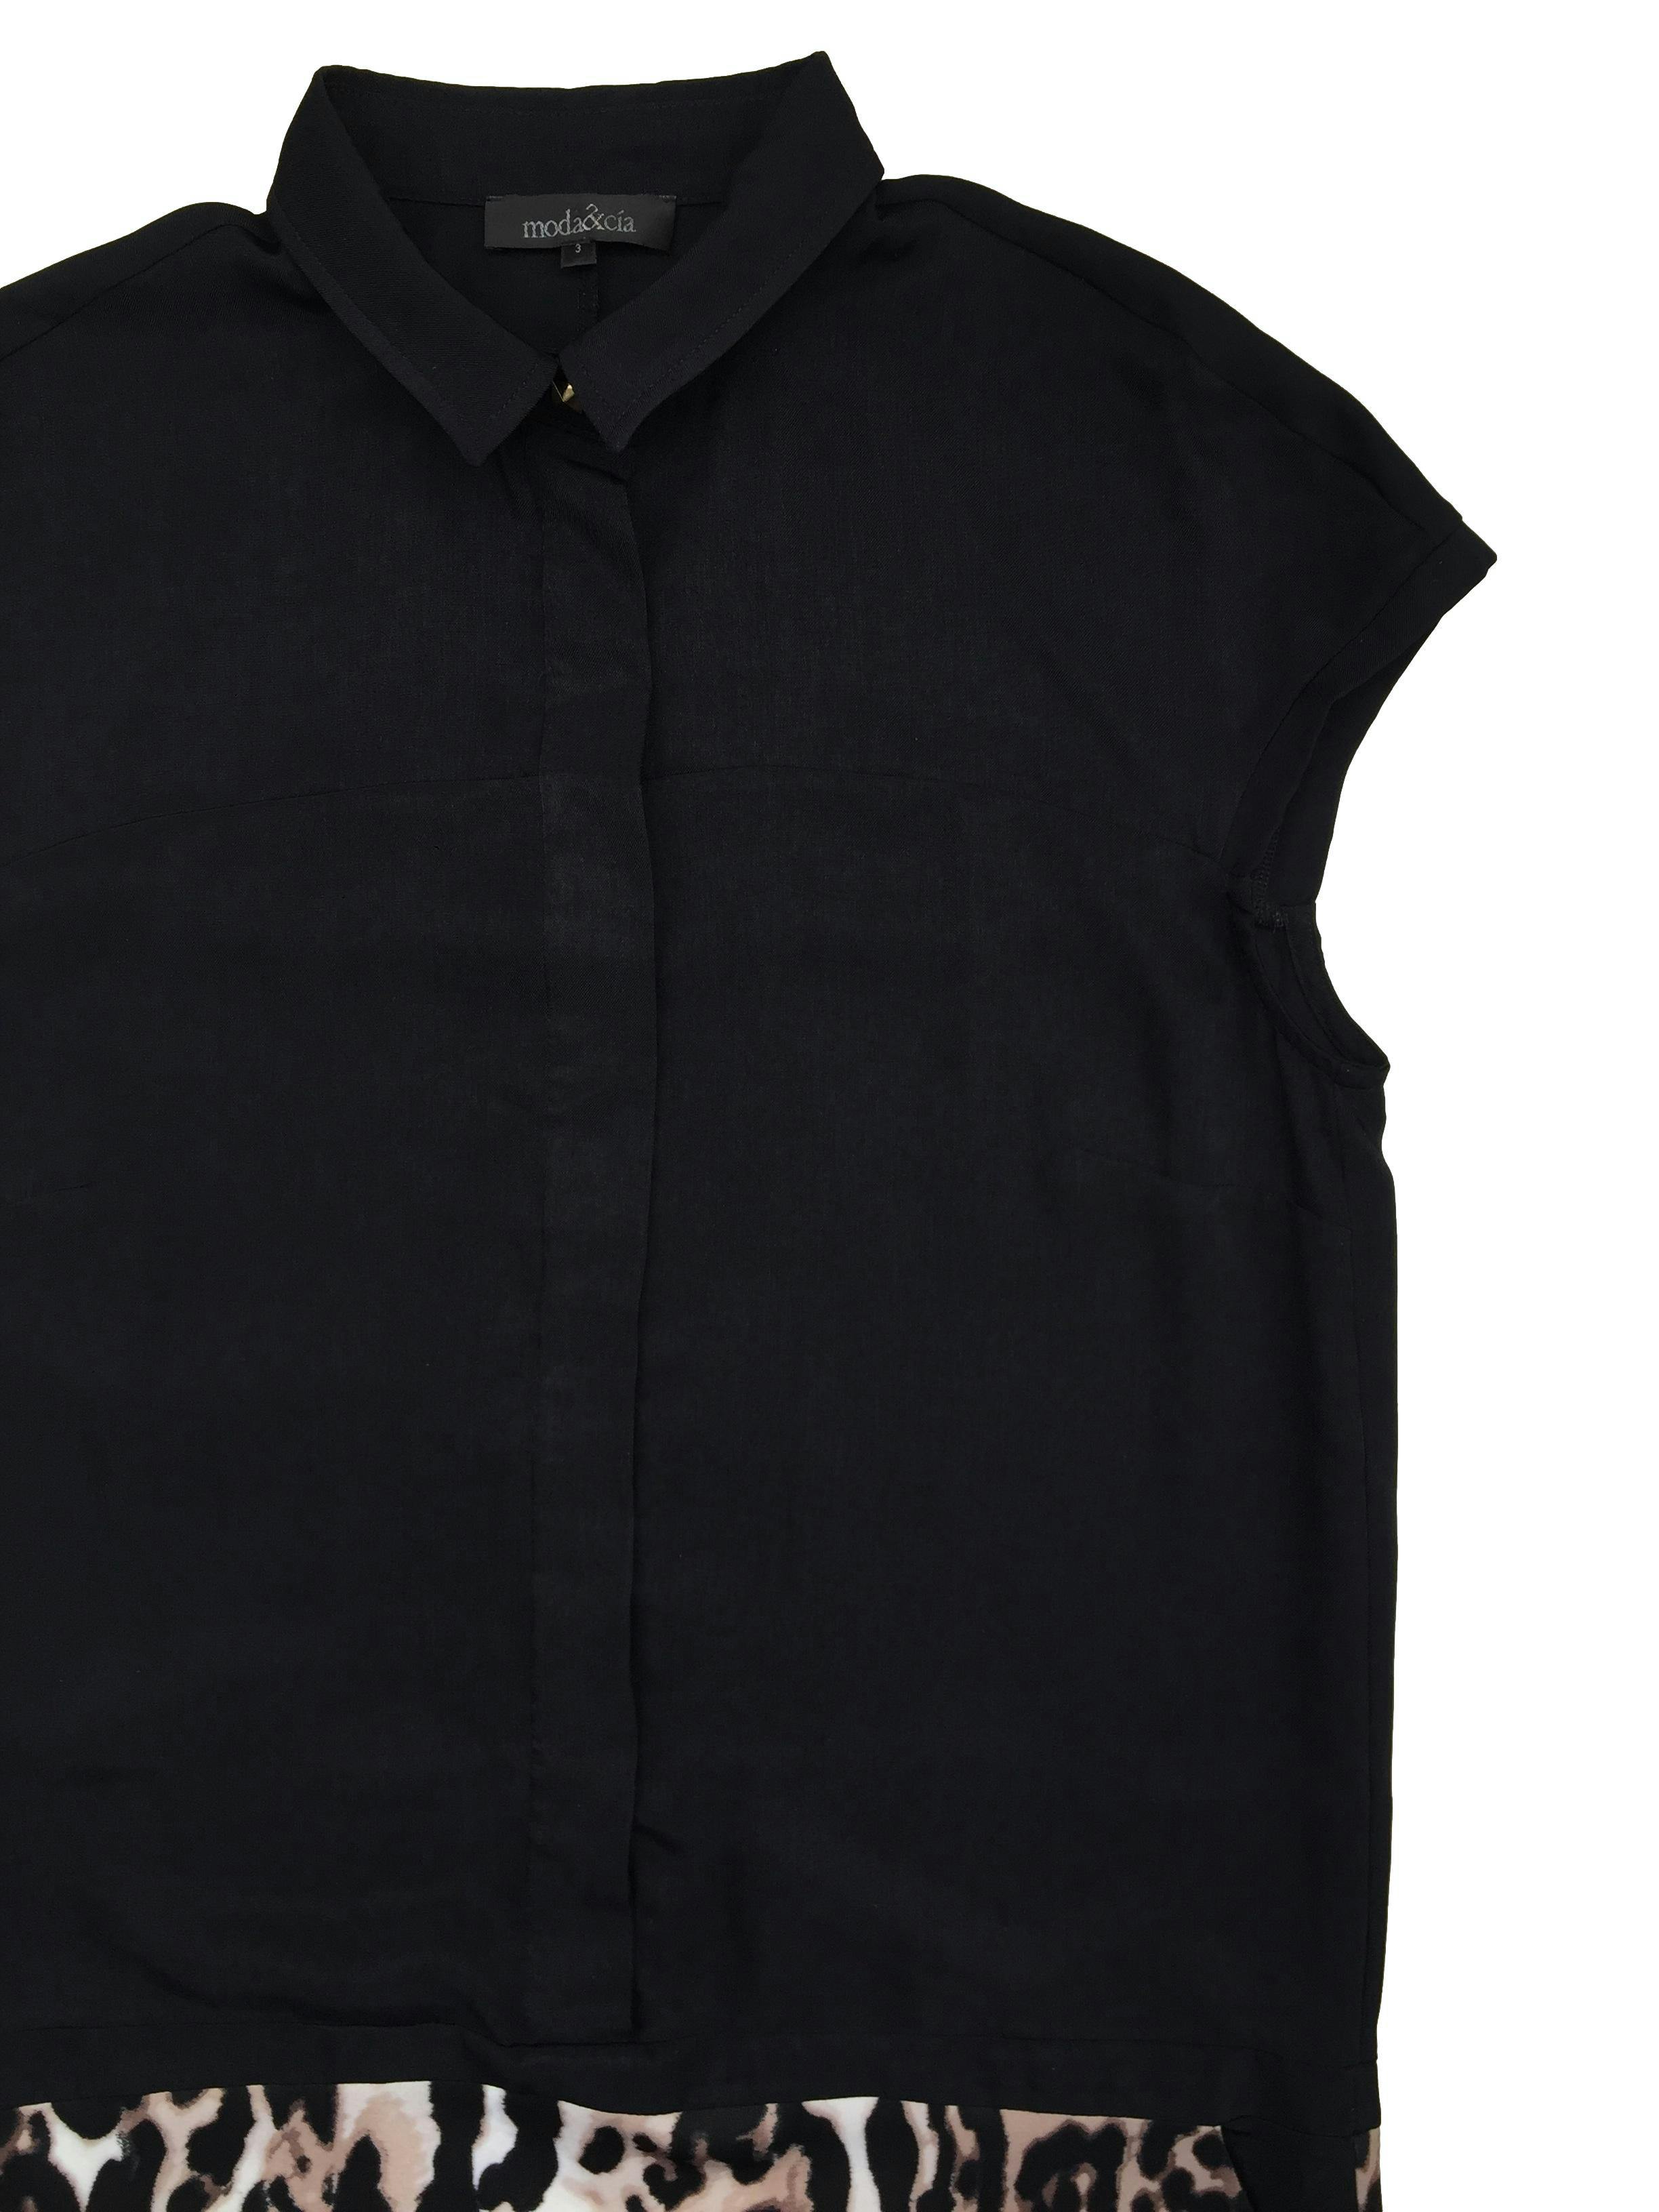 Vestido Moda & cia negro de cuello camisero, falda en animal print, con botones delanteros invisibles. Busto 100cm, Largo 92cm